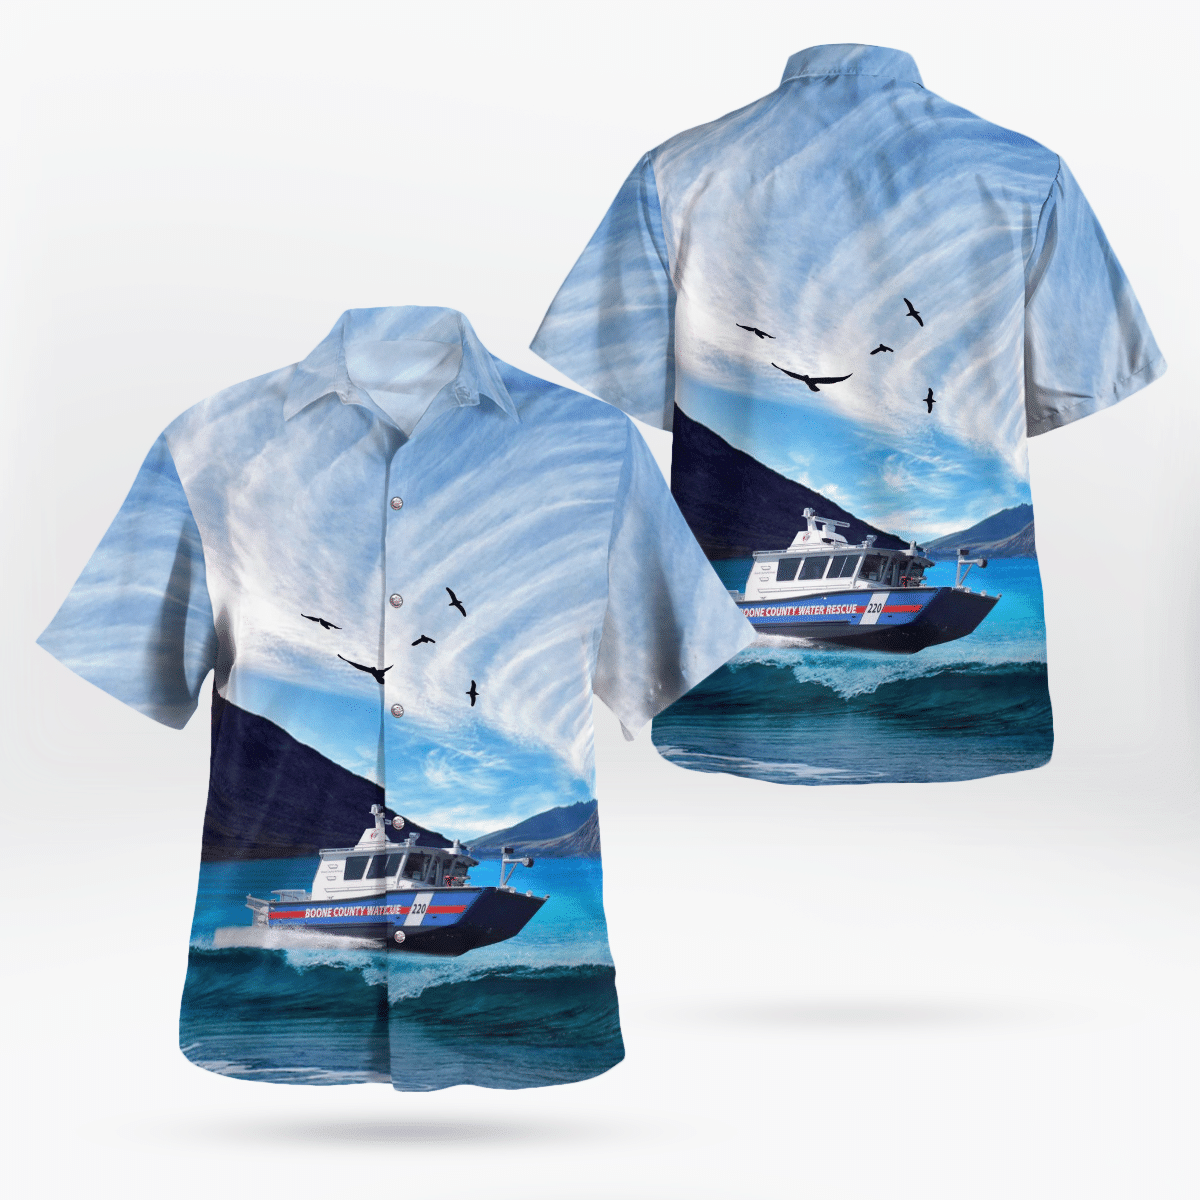 You won't regret buying these Aloha Shirt 48